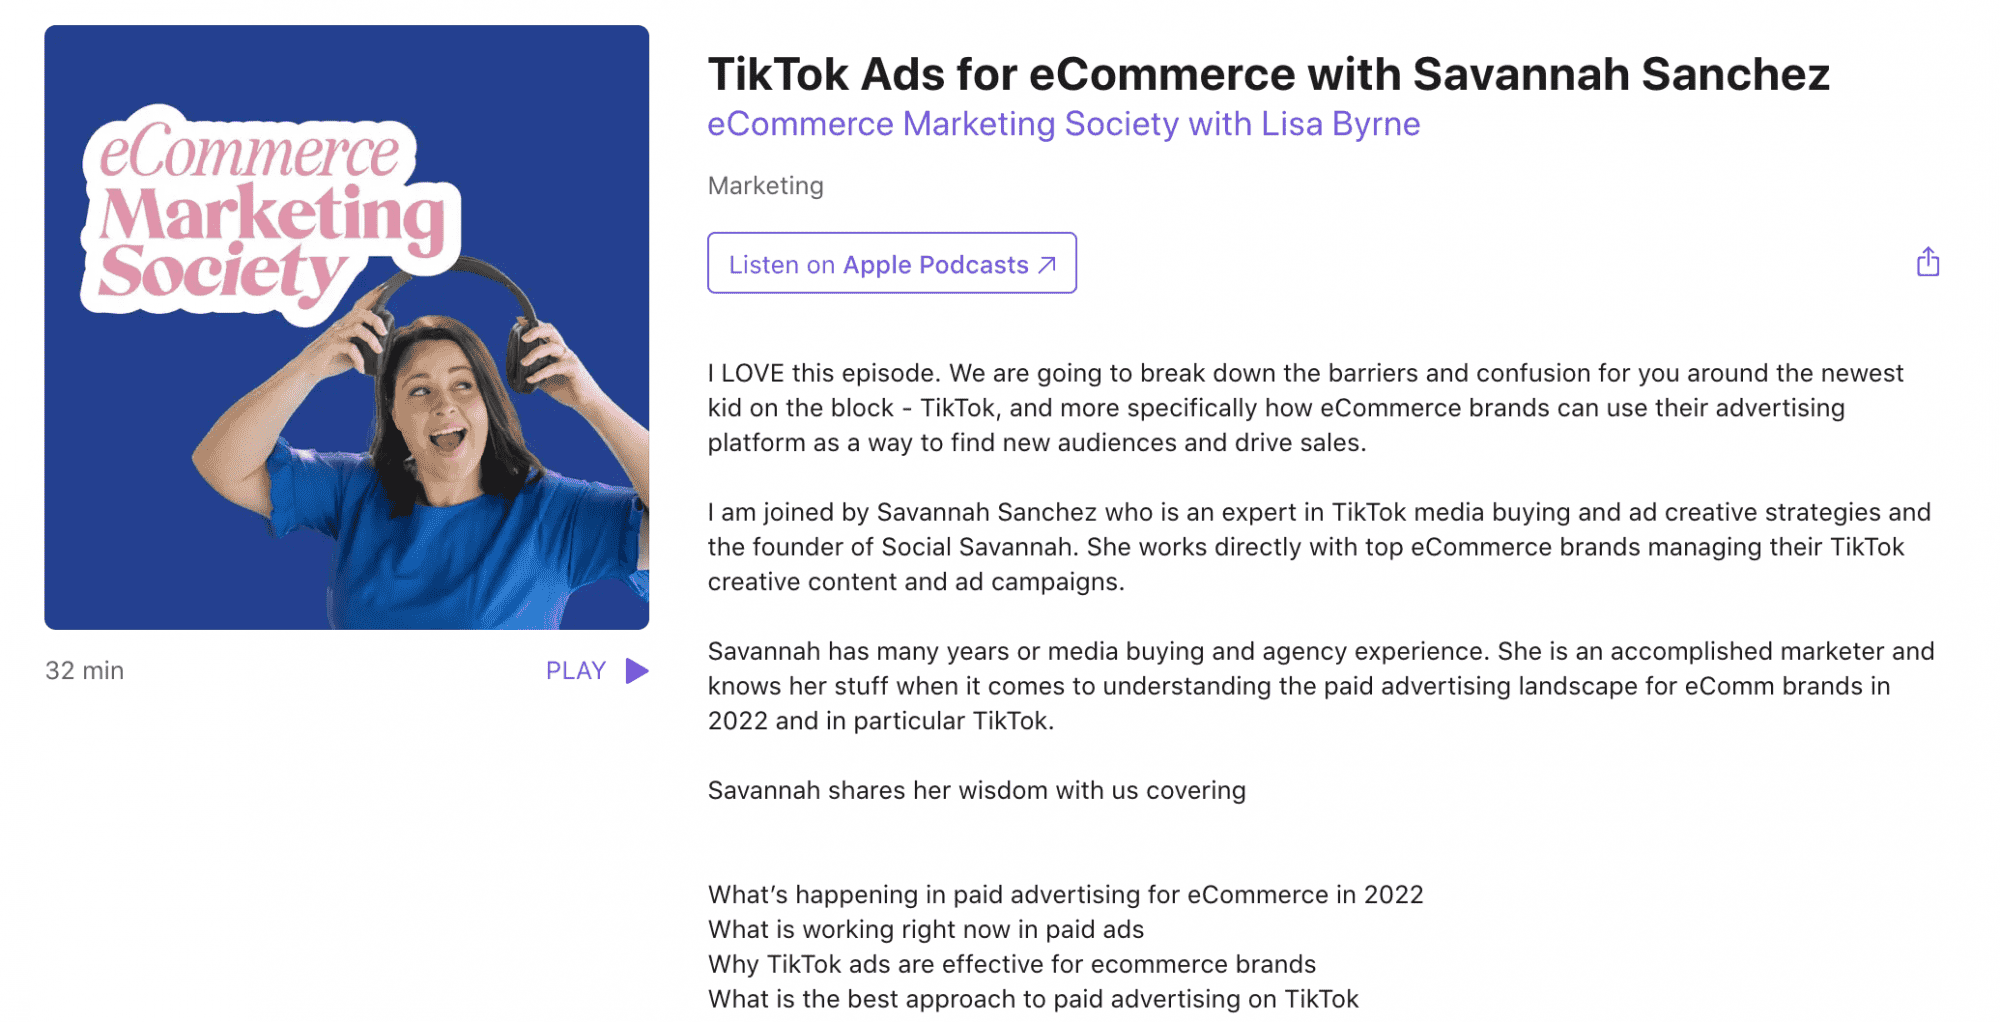 TikTok Ads for eCommerce with Savannah Sanchez